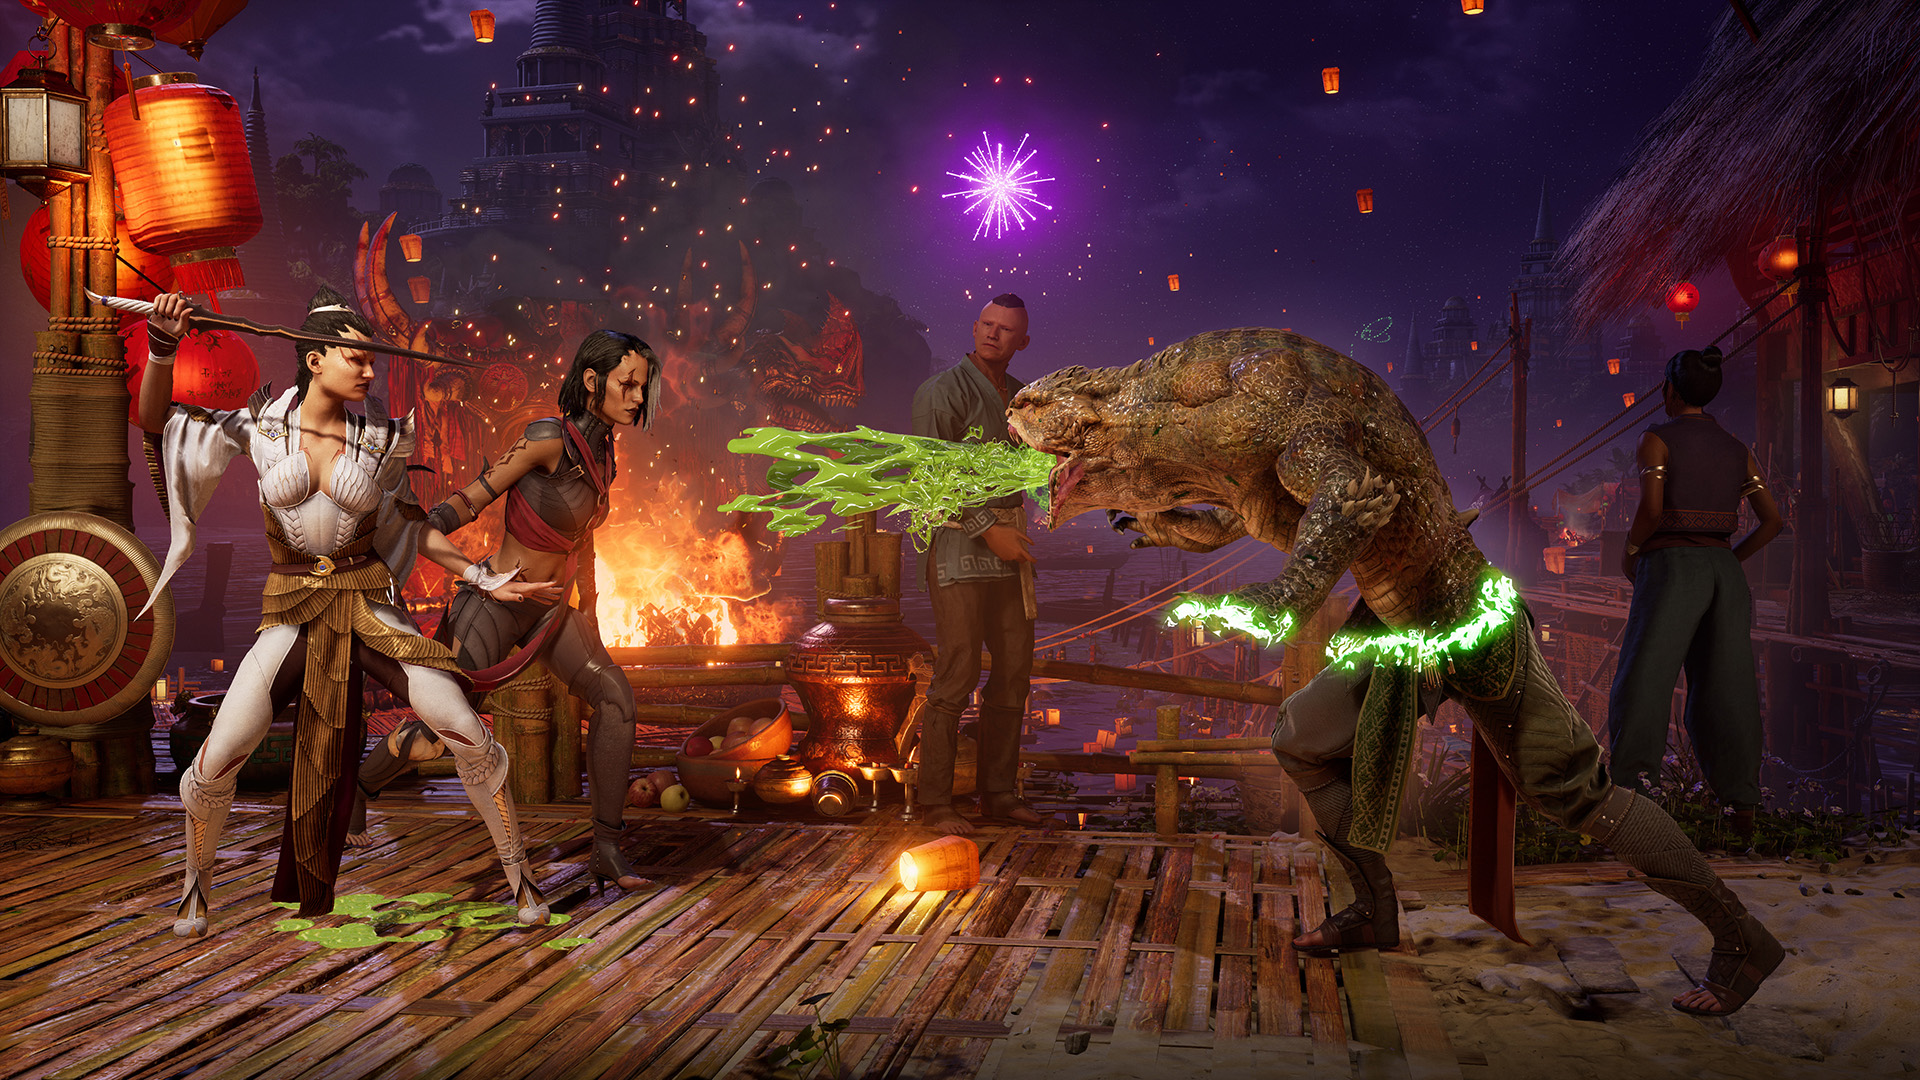 Mortal Kombat 1: Data de lançamento, preços e novidades